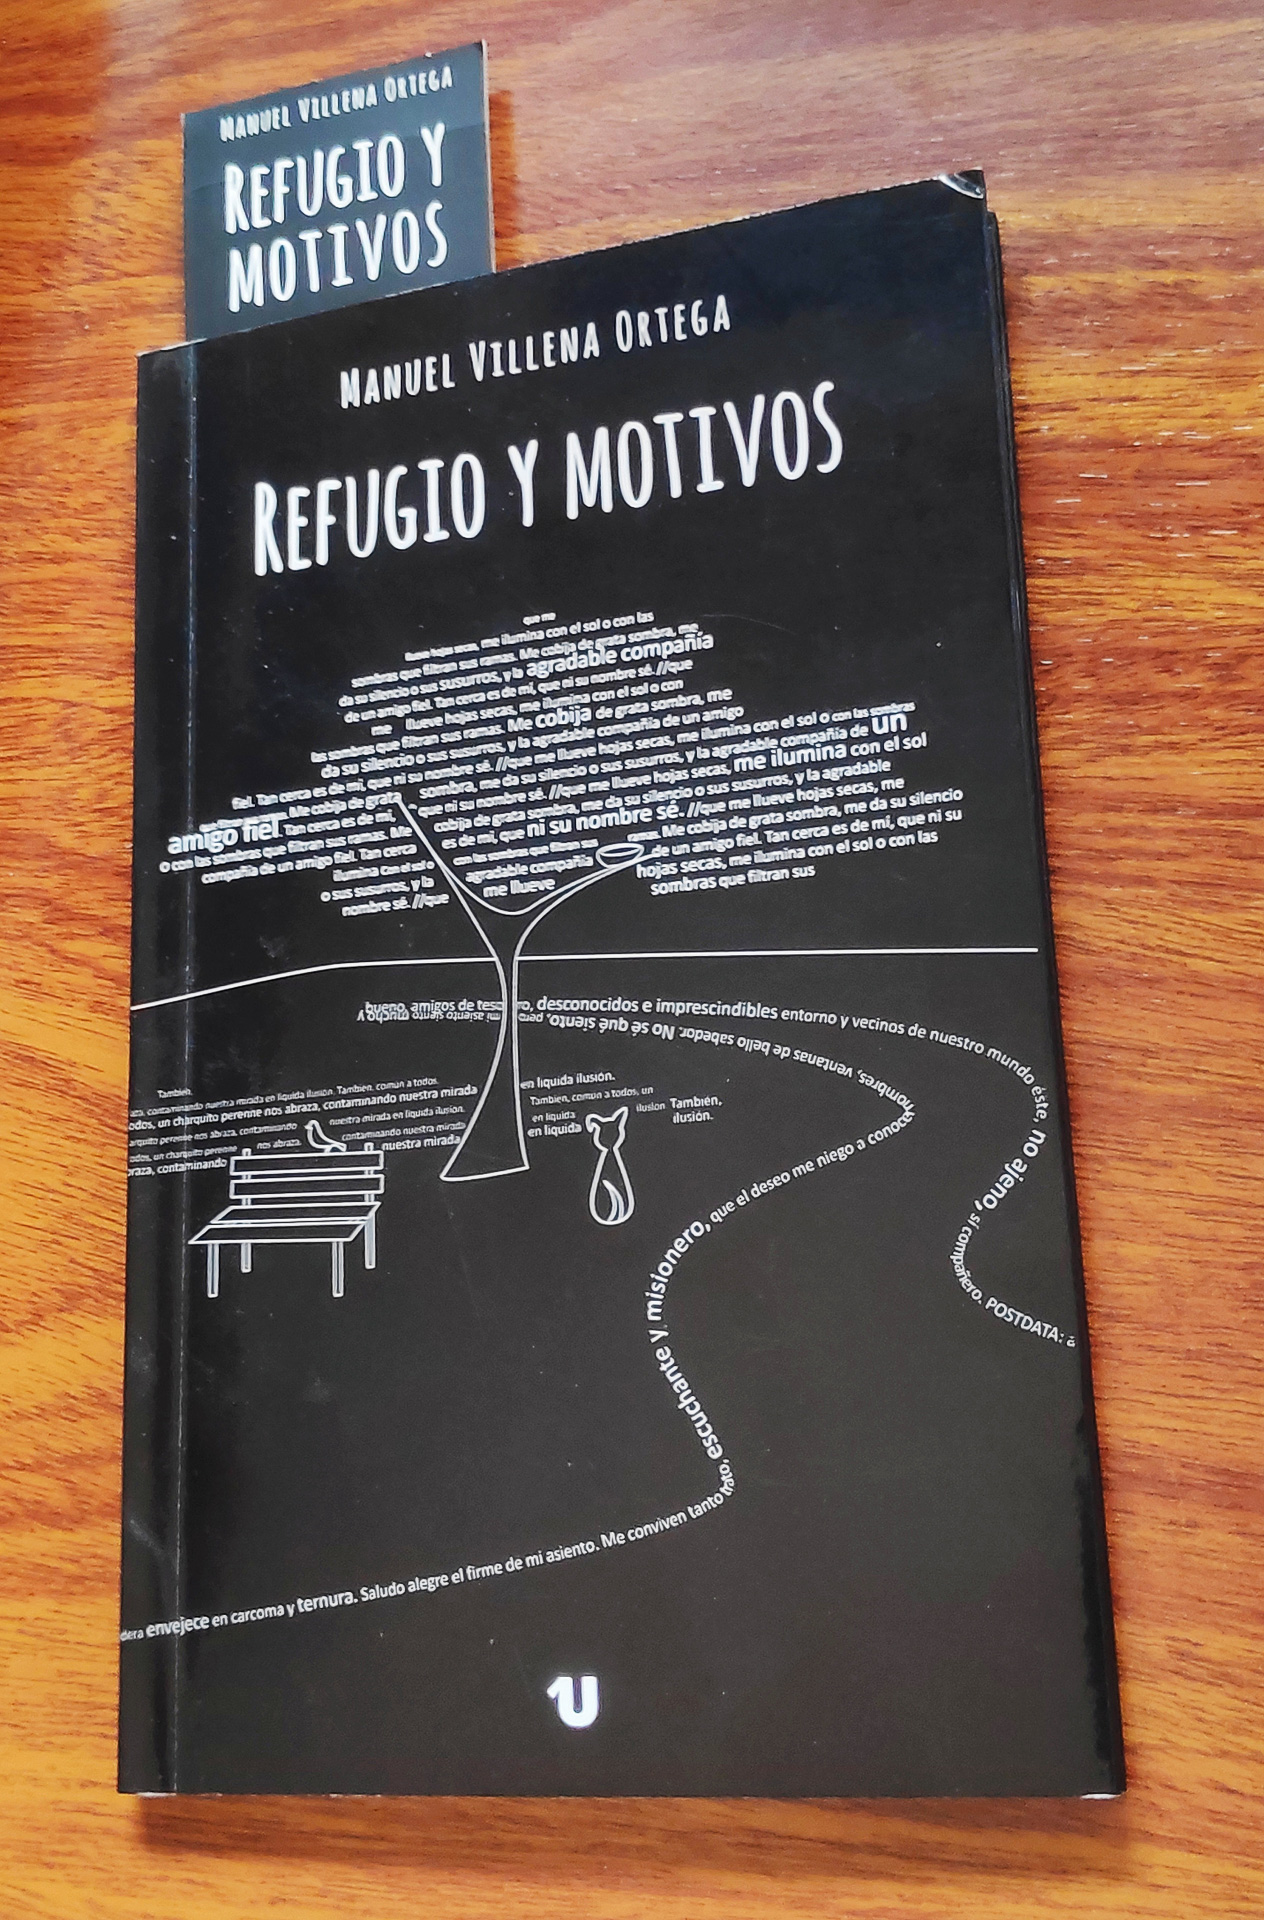 Portada del libro Refugio y Motivos de Manuel Villena Ortega Autora de la Portada: Marta Martínez Gadea